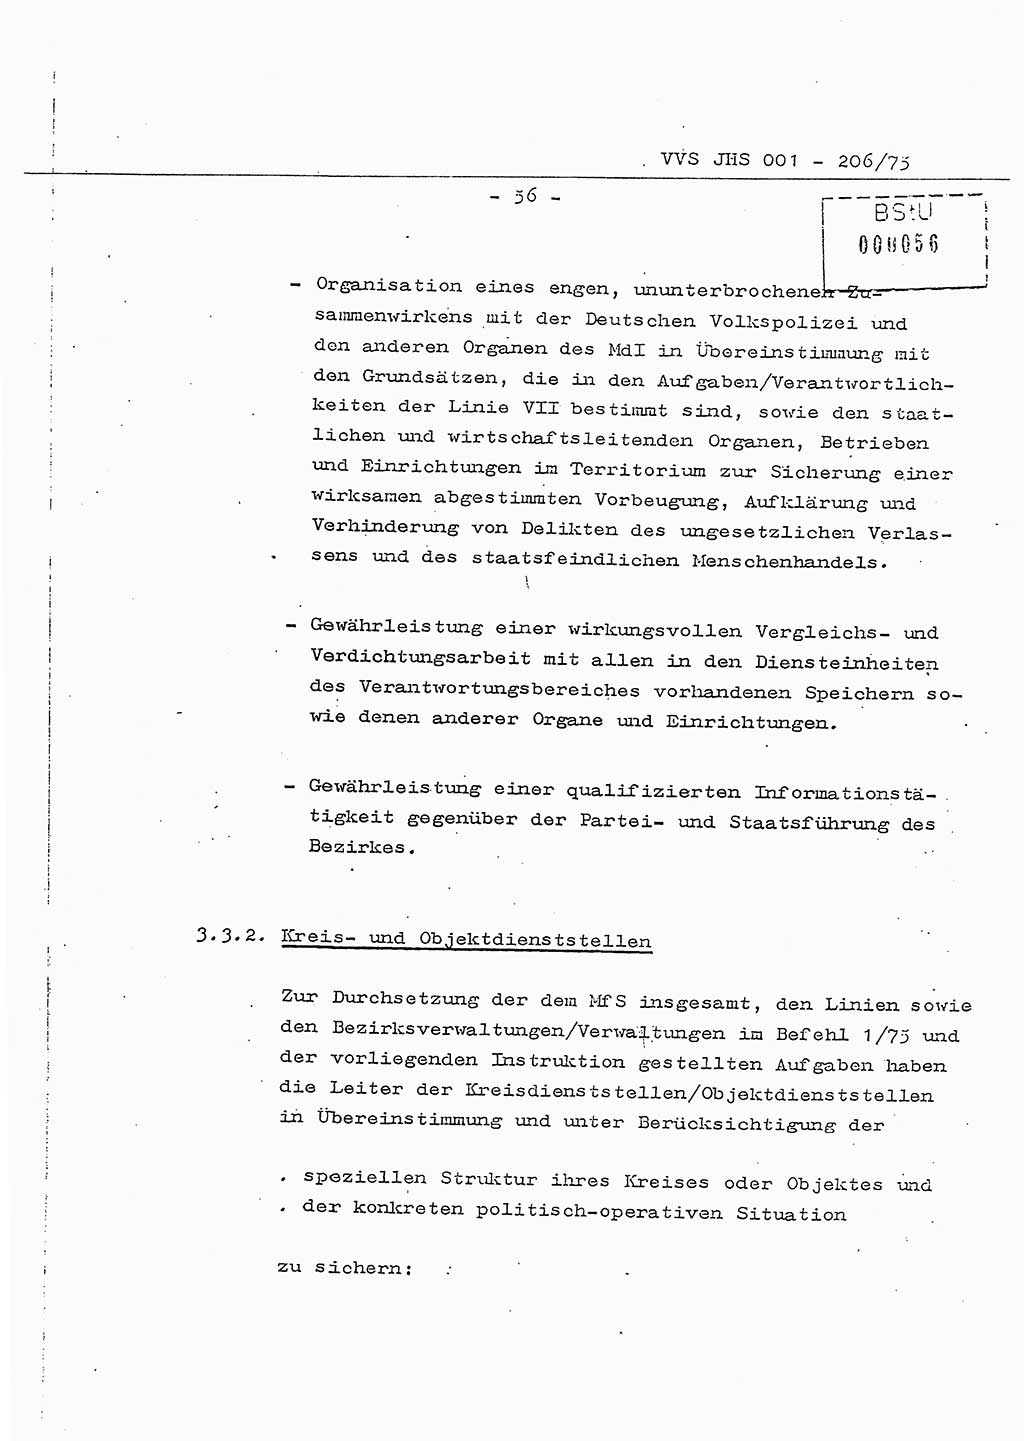 Dissertation Generalmajor Manfred Hummitzsch (Leiter der BV Leipzig), Generalmajor Heinz Fiedler (HA Ⅵ), Oberst Rolf Fister (HA Ⅸ), Ministerium für Staatssicherheit (MfS) [Deutsche Demokratische Republik (DDR)], Juristische Hochschule (JHS), Vertrauliche Verschlußsache (VVS) 001-206/75, Potsdam 1975, Seite 56 (Diss. MfS DDR JHS VVS 001-206/75 1975, S. 56)